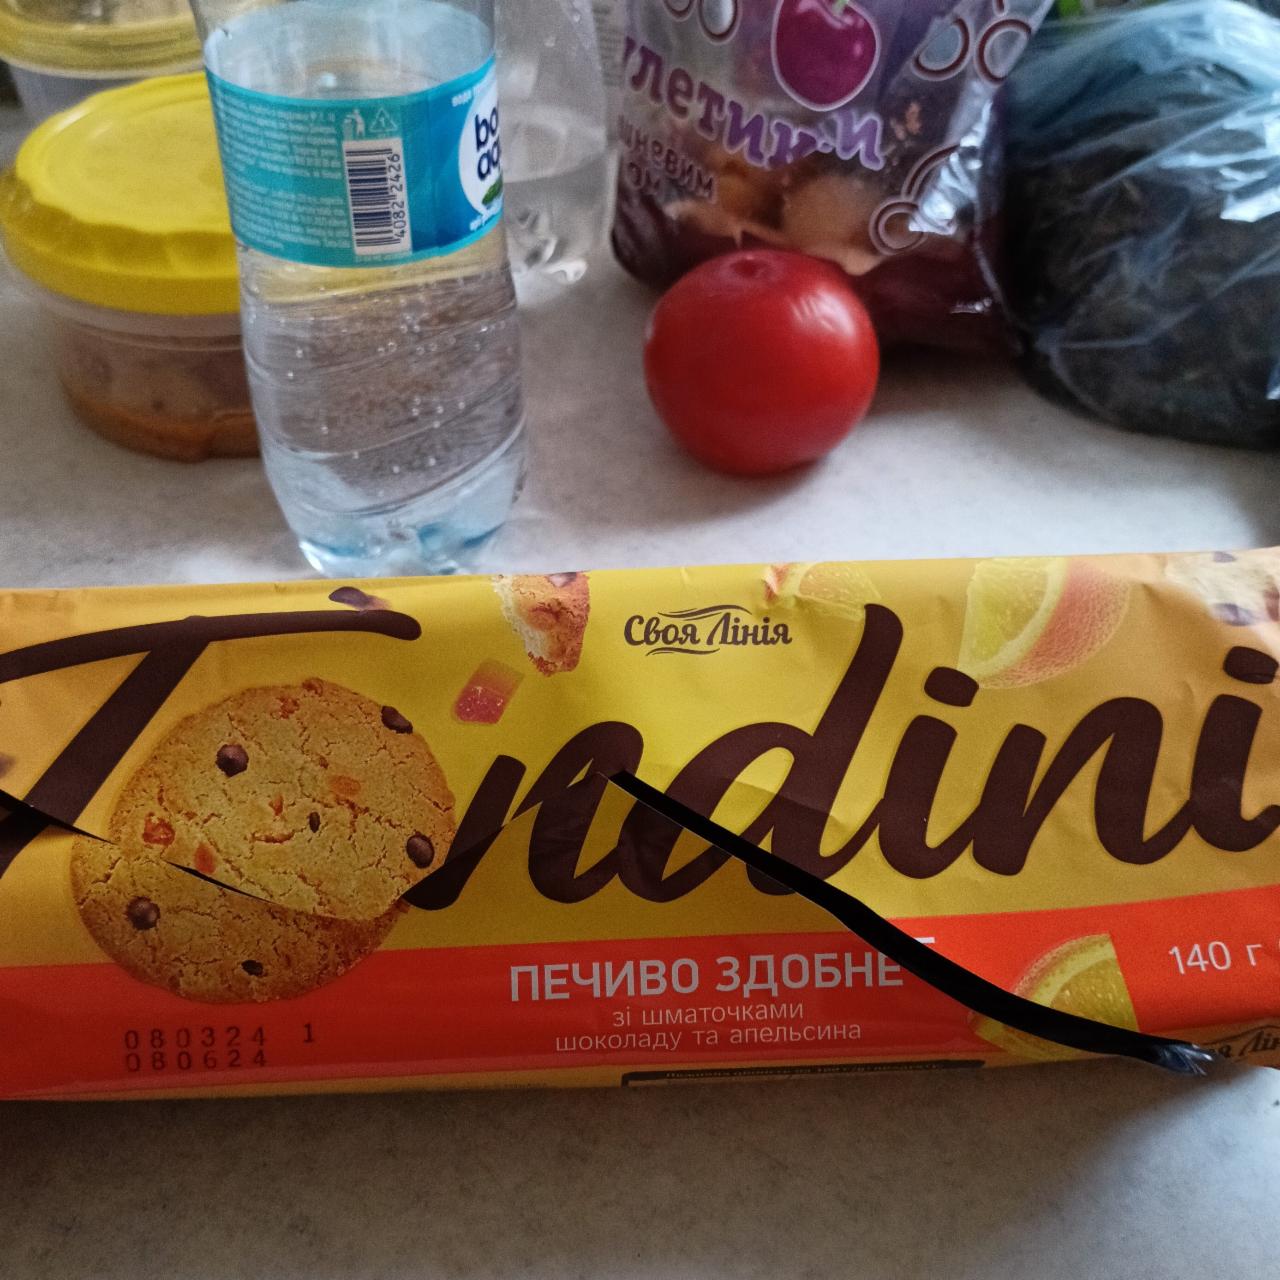 Фото - Печенье сдобное с кусочками шоколада и апельсина tondini Своя Лінія